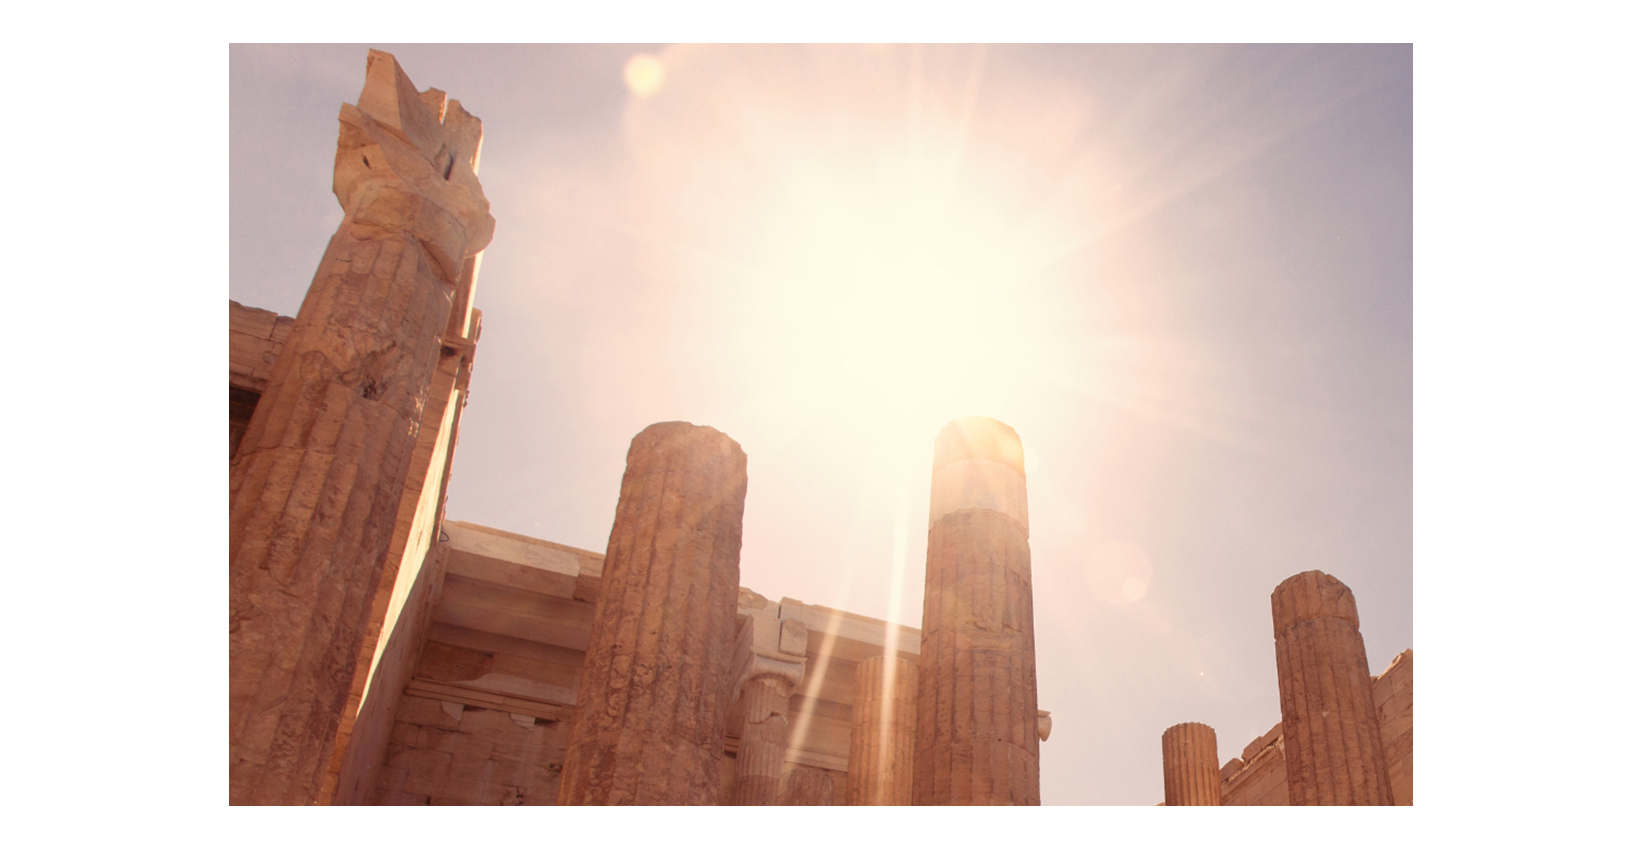 Die Sonne strahlt durch ein antikes griechisches Gebäude